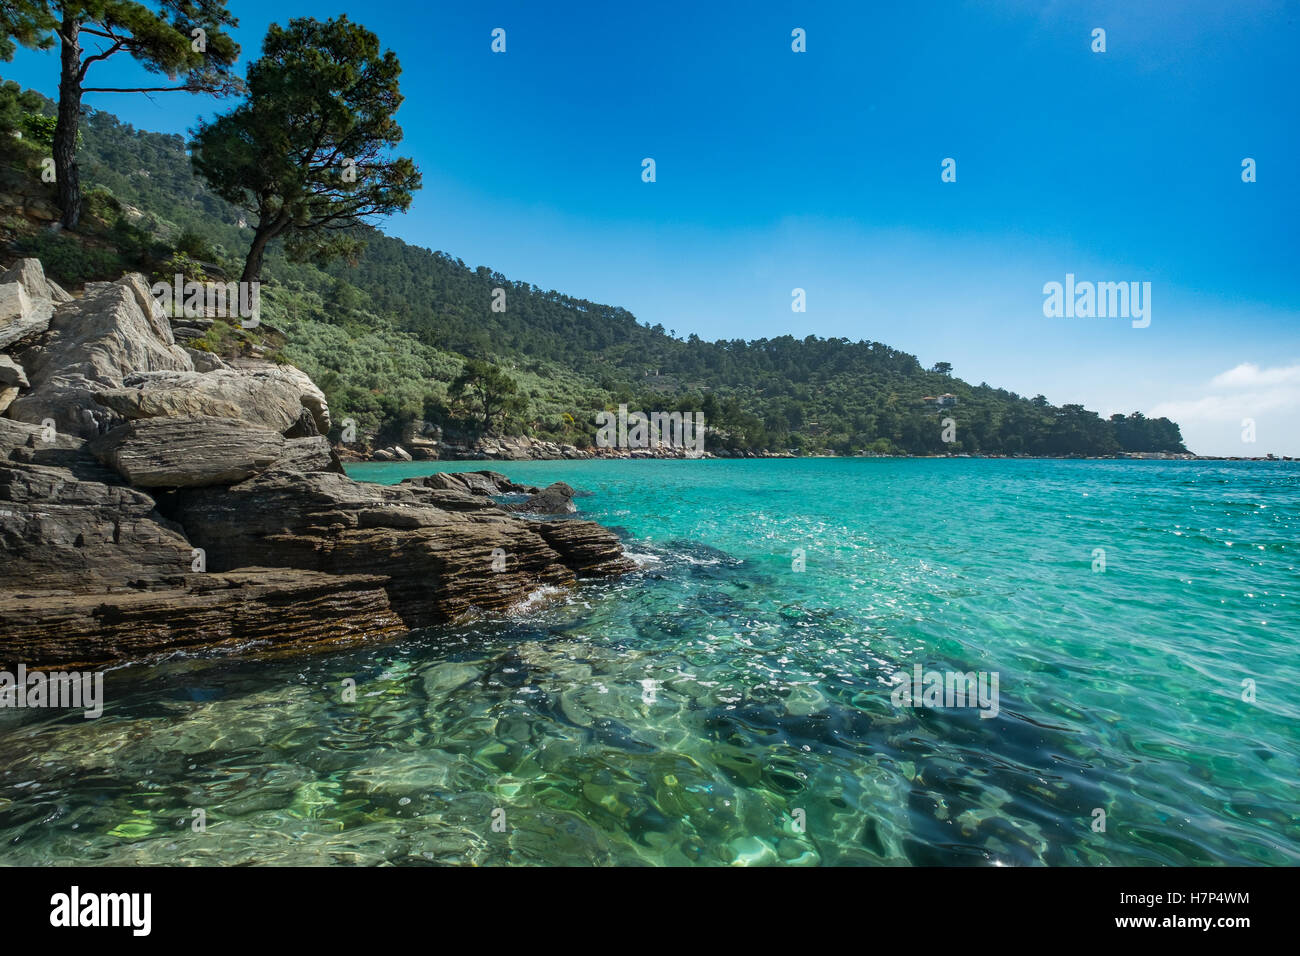 Beautiful rocky Greek coastline. Stock Photo